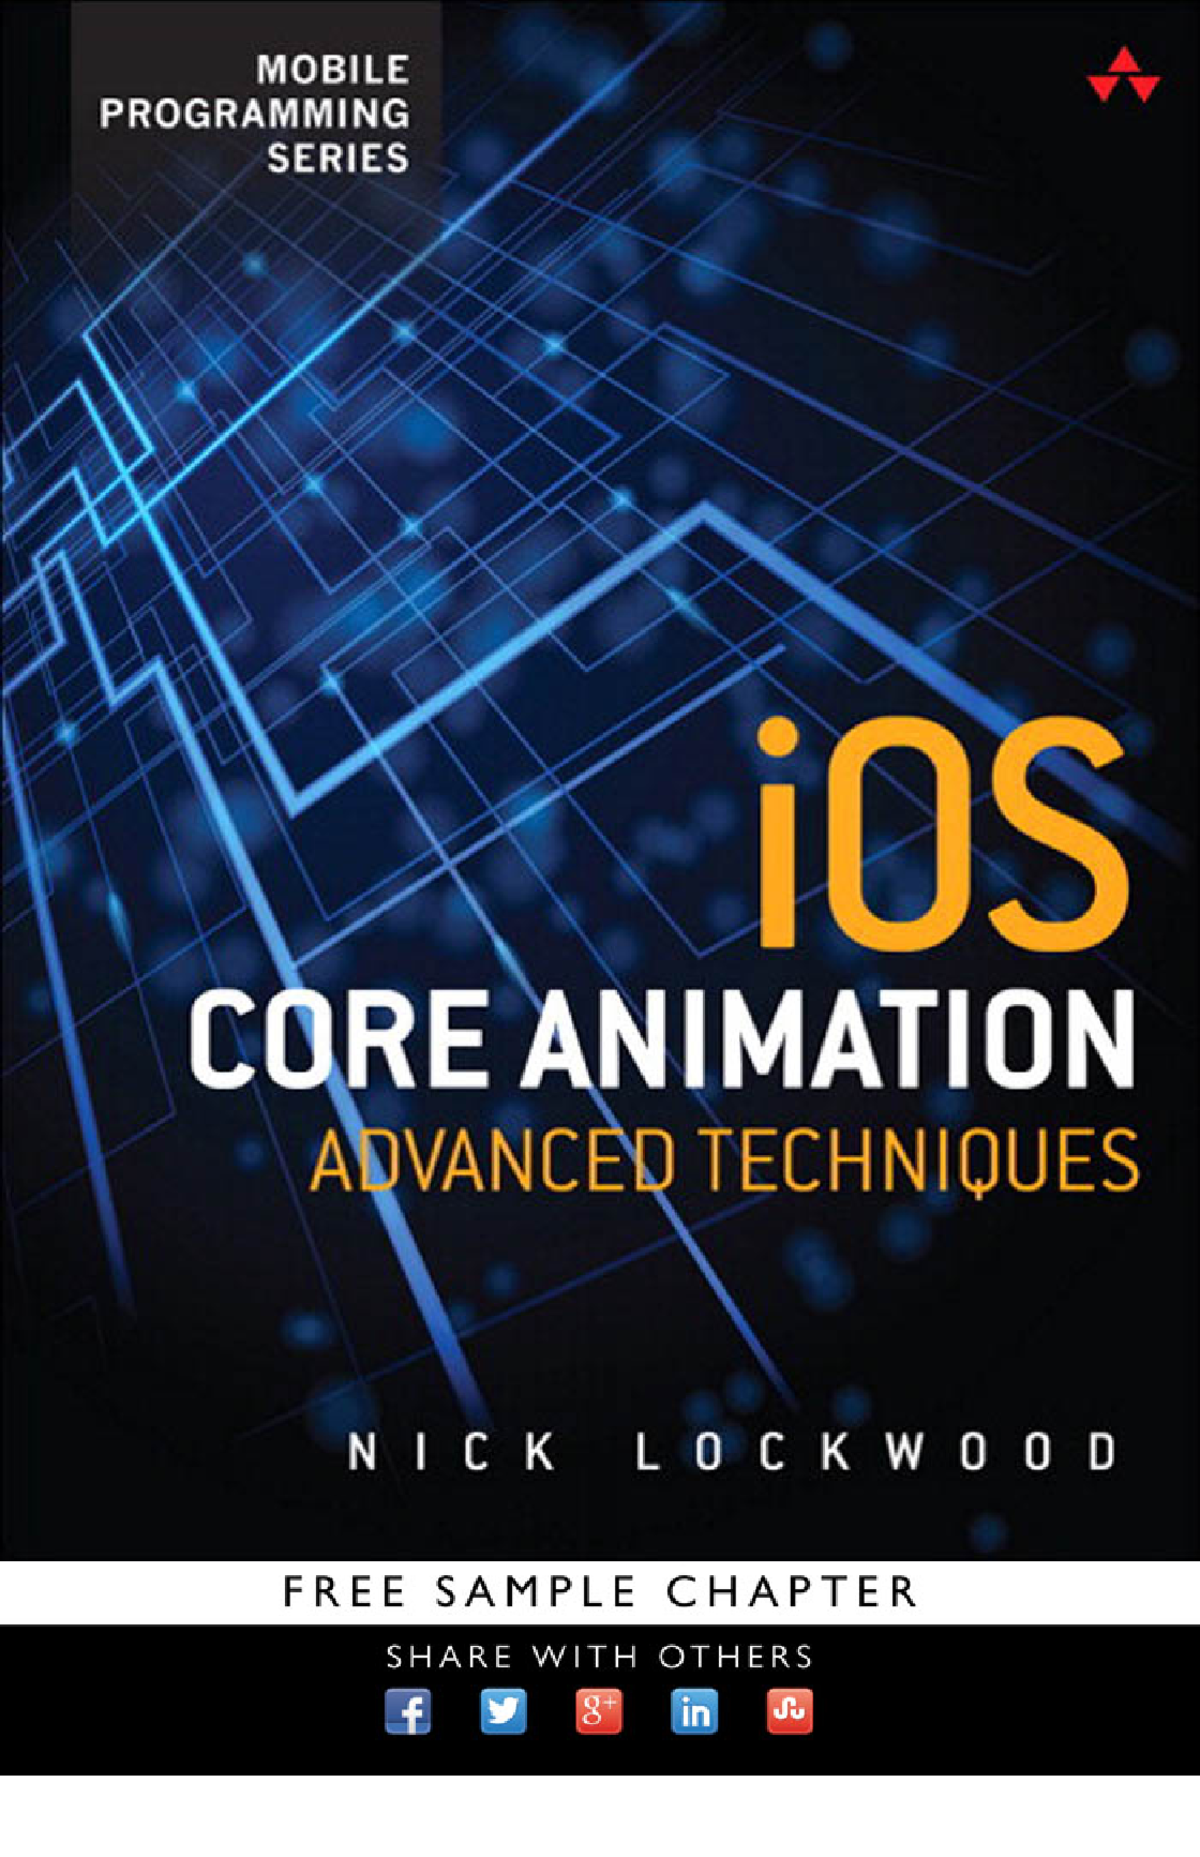 IOS Core Animation - iOS Core Animation iOS Core Animation Advanced  Techniques ####### Nick Lockwood - Studocu